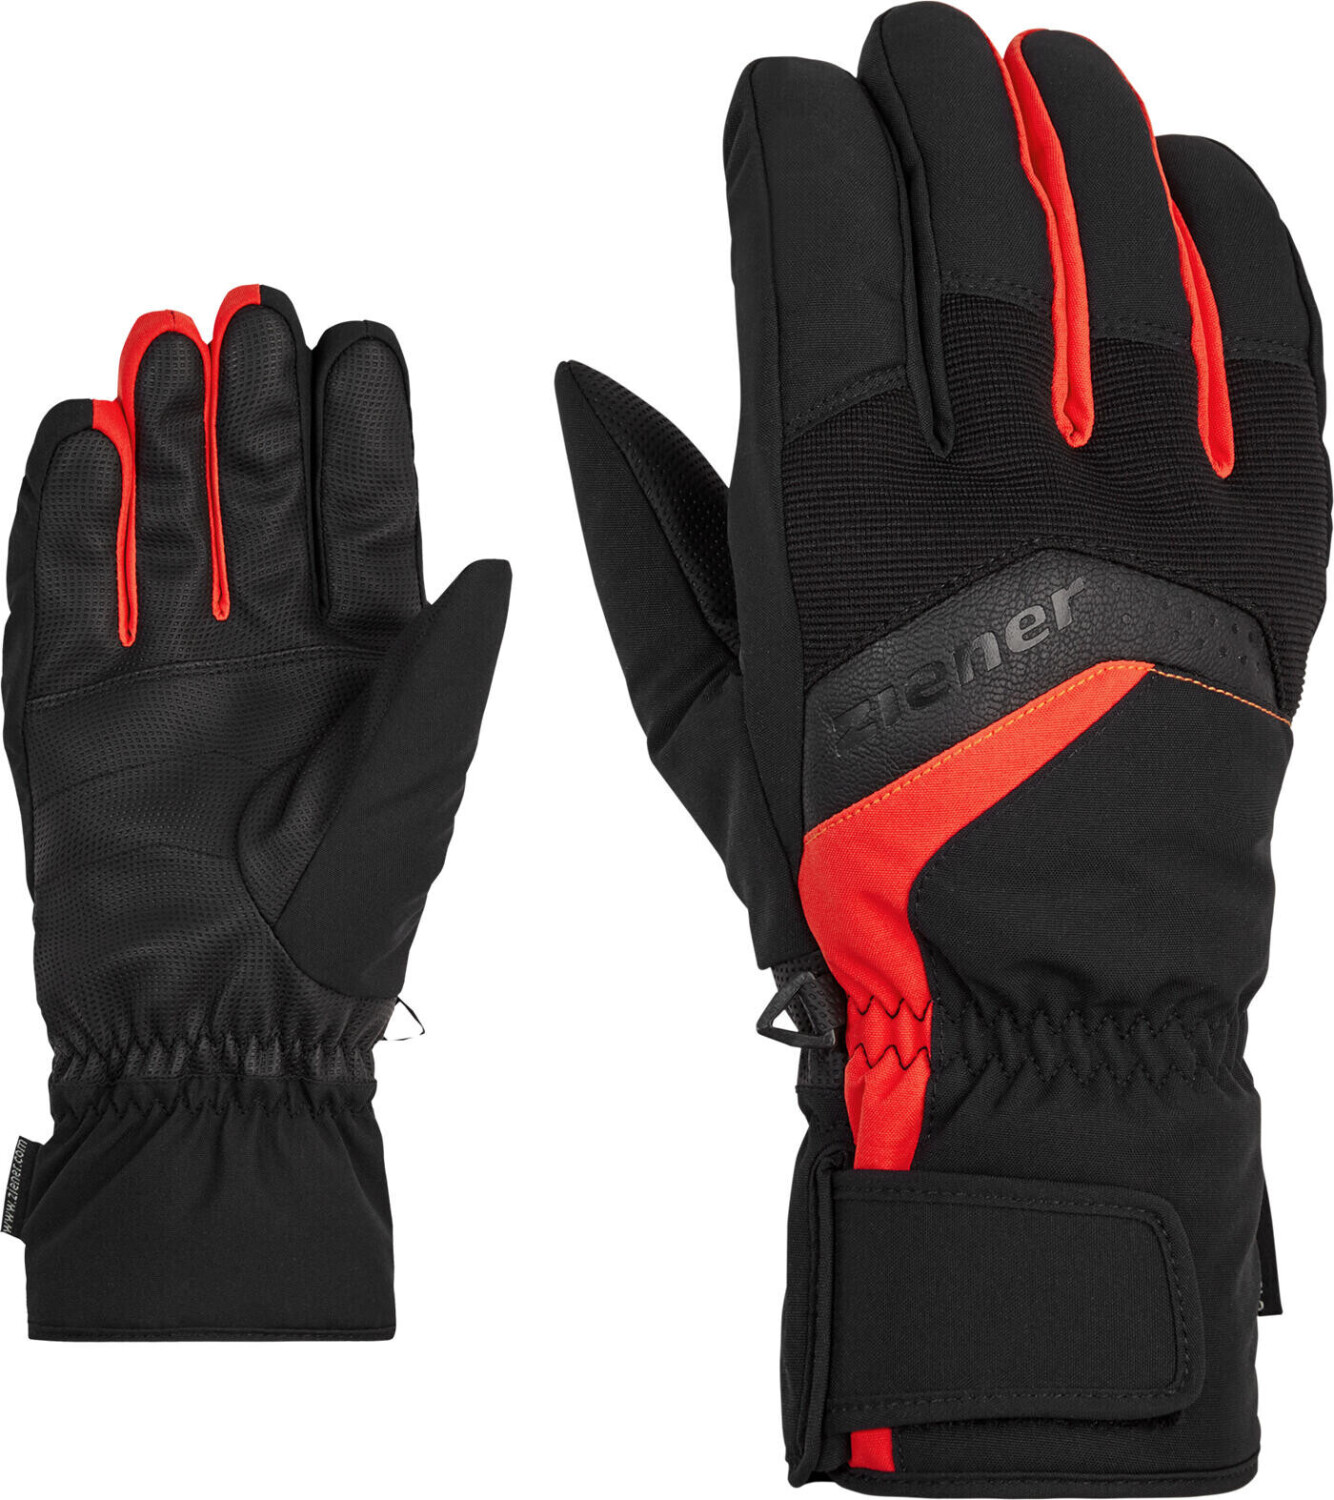 Photos - Ski Wear Ziener Gabino Glove Ski Alpine black.new red 